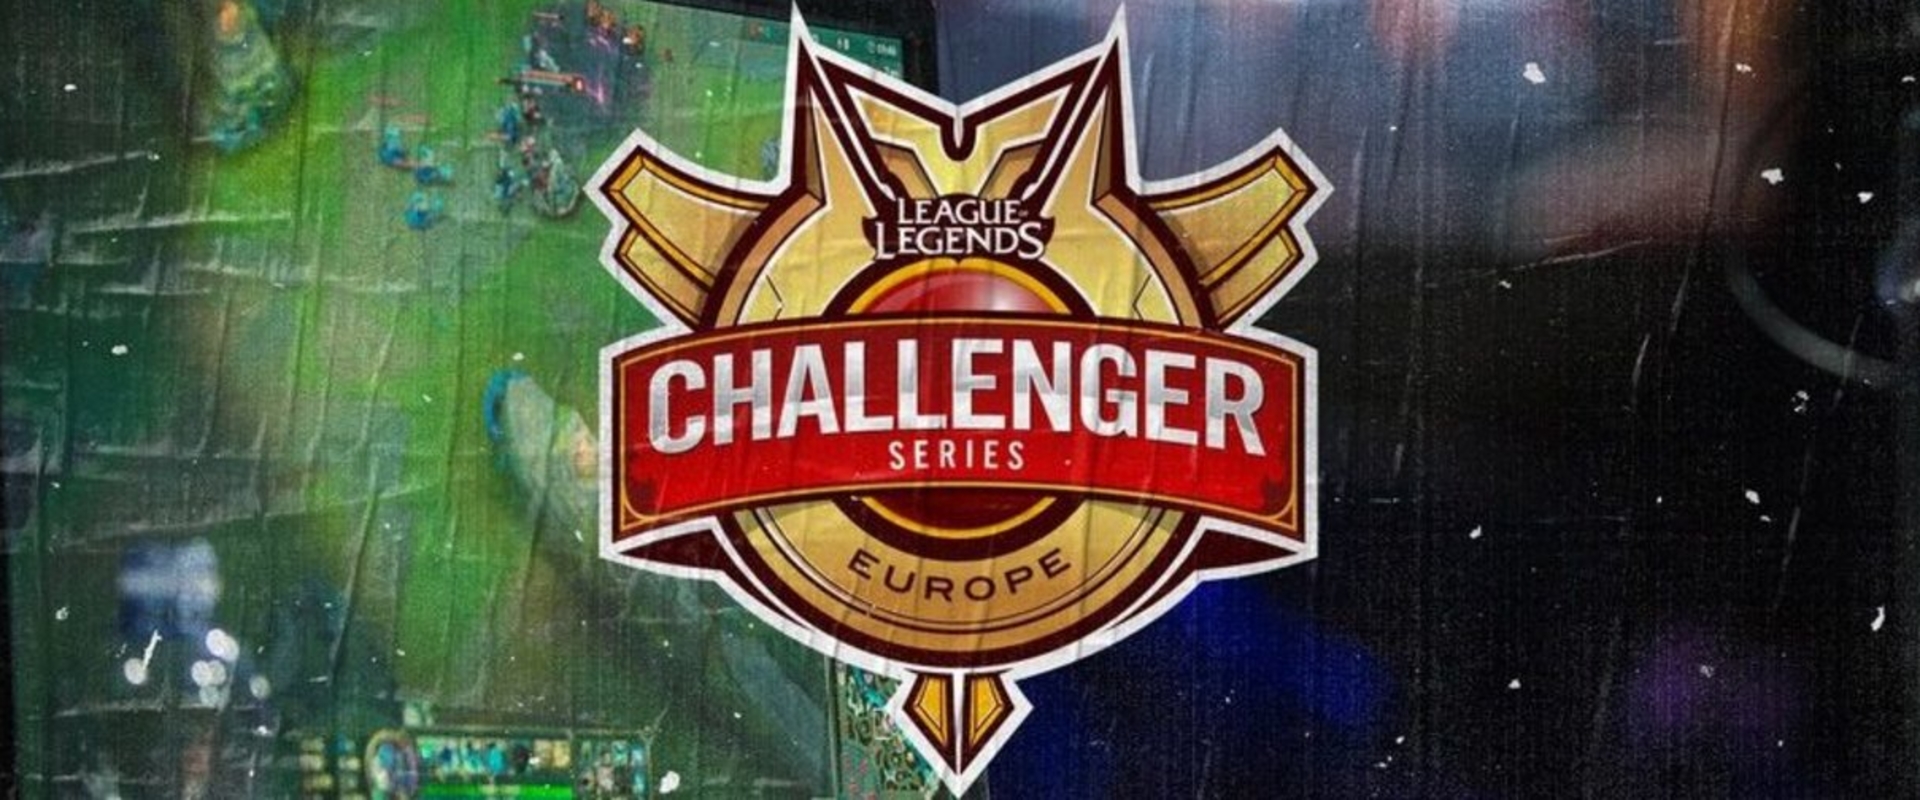 Indul az EU Challenger Series kvali, két helyért küzdenek 12-en